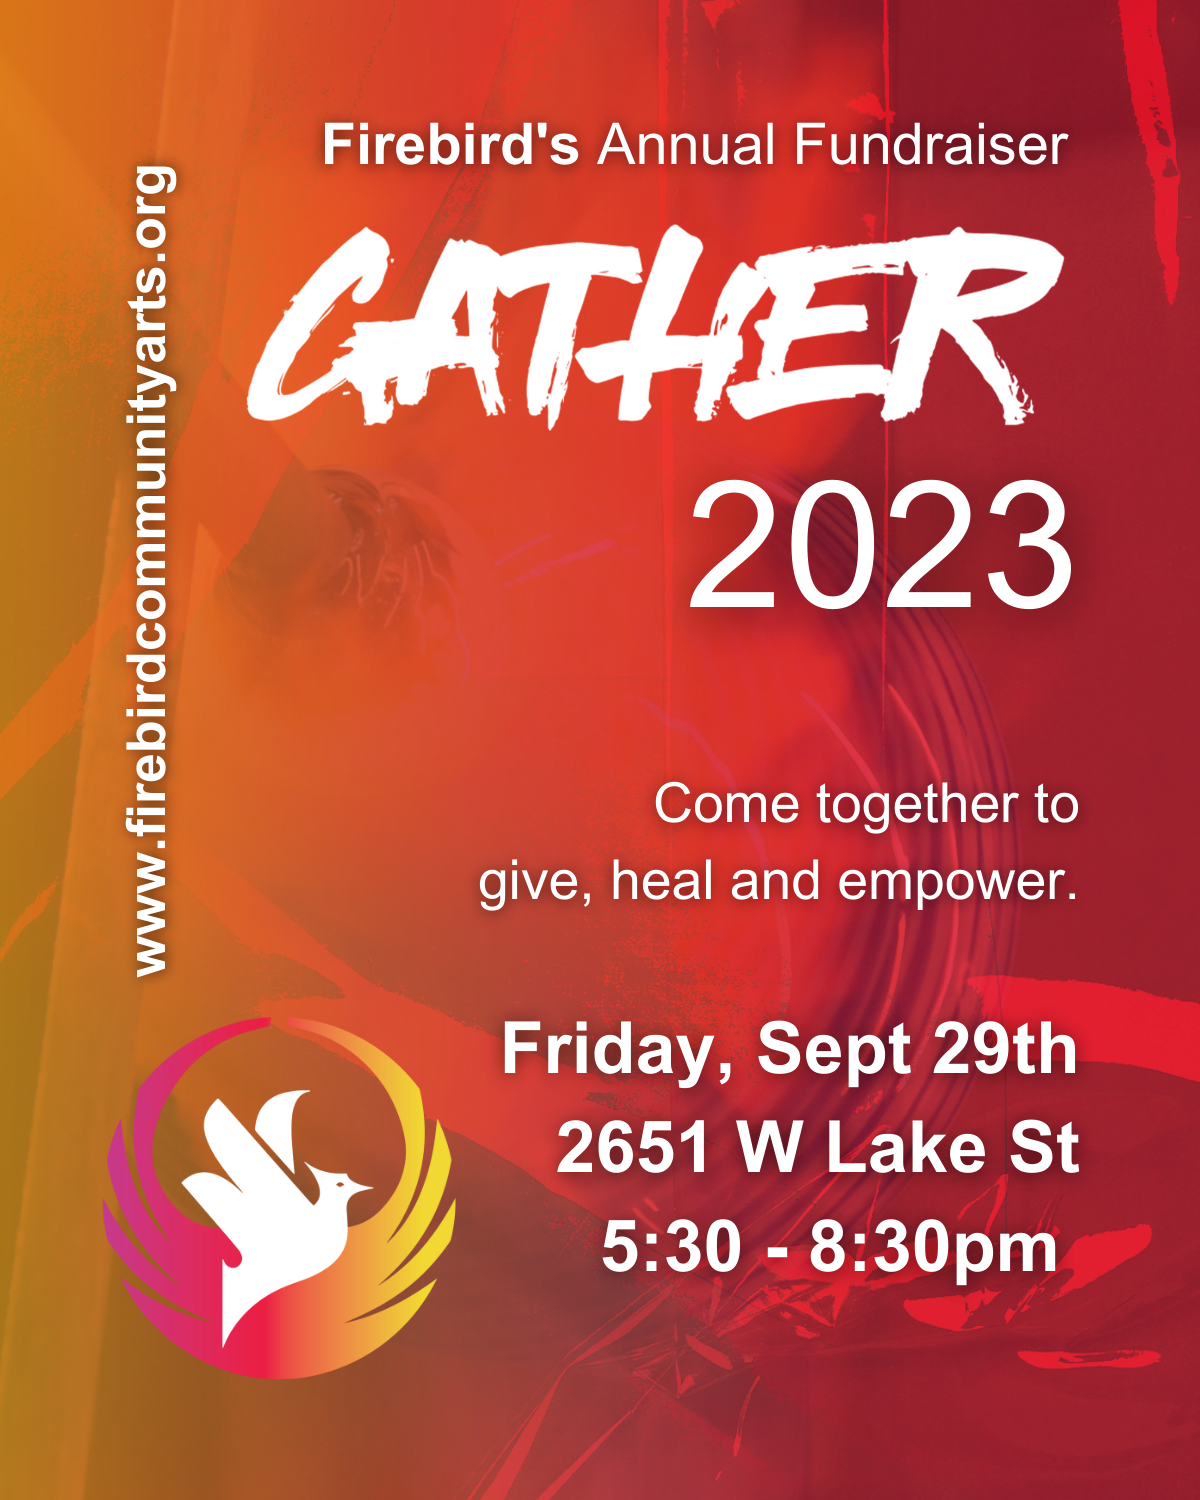 Gather: A Firebird Fundraiser